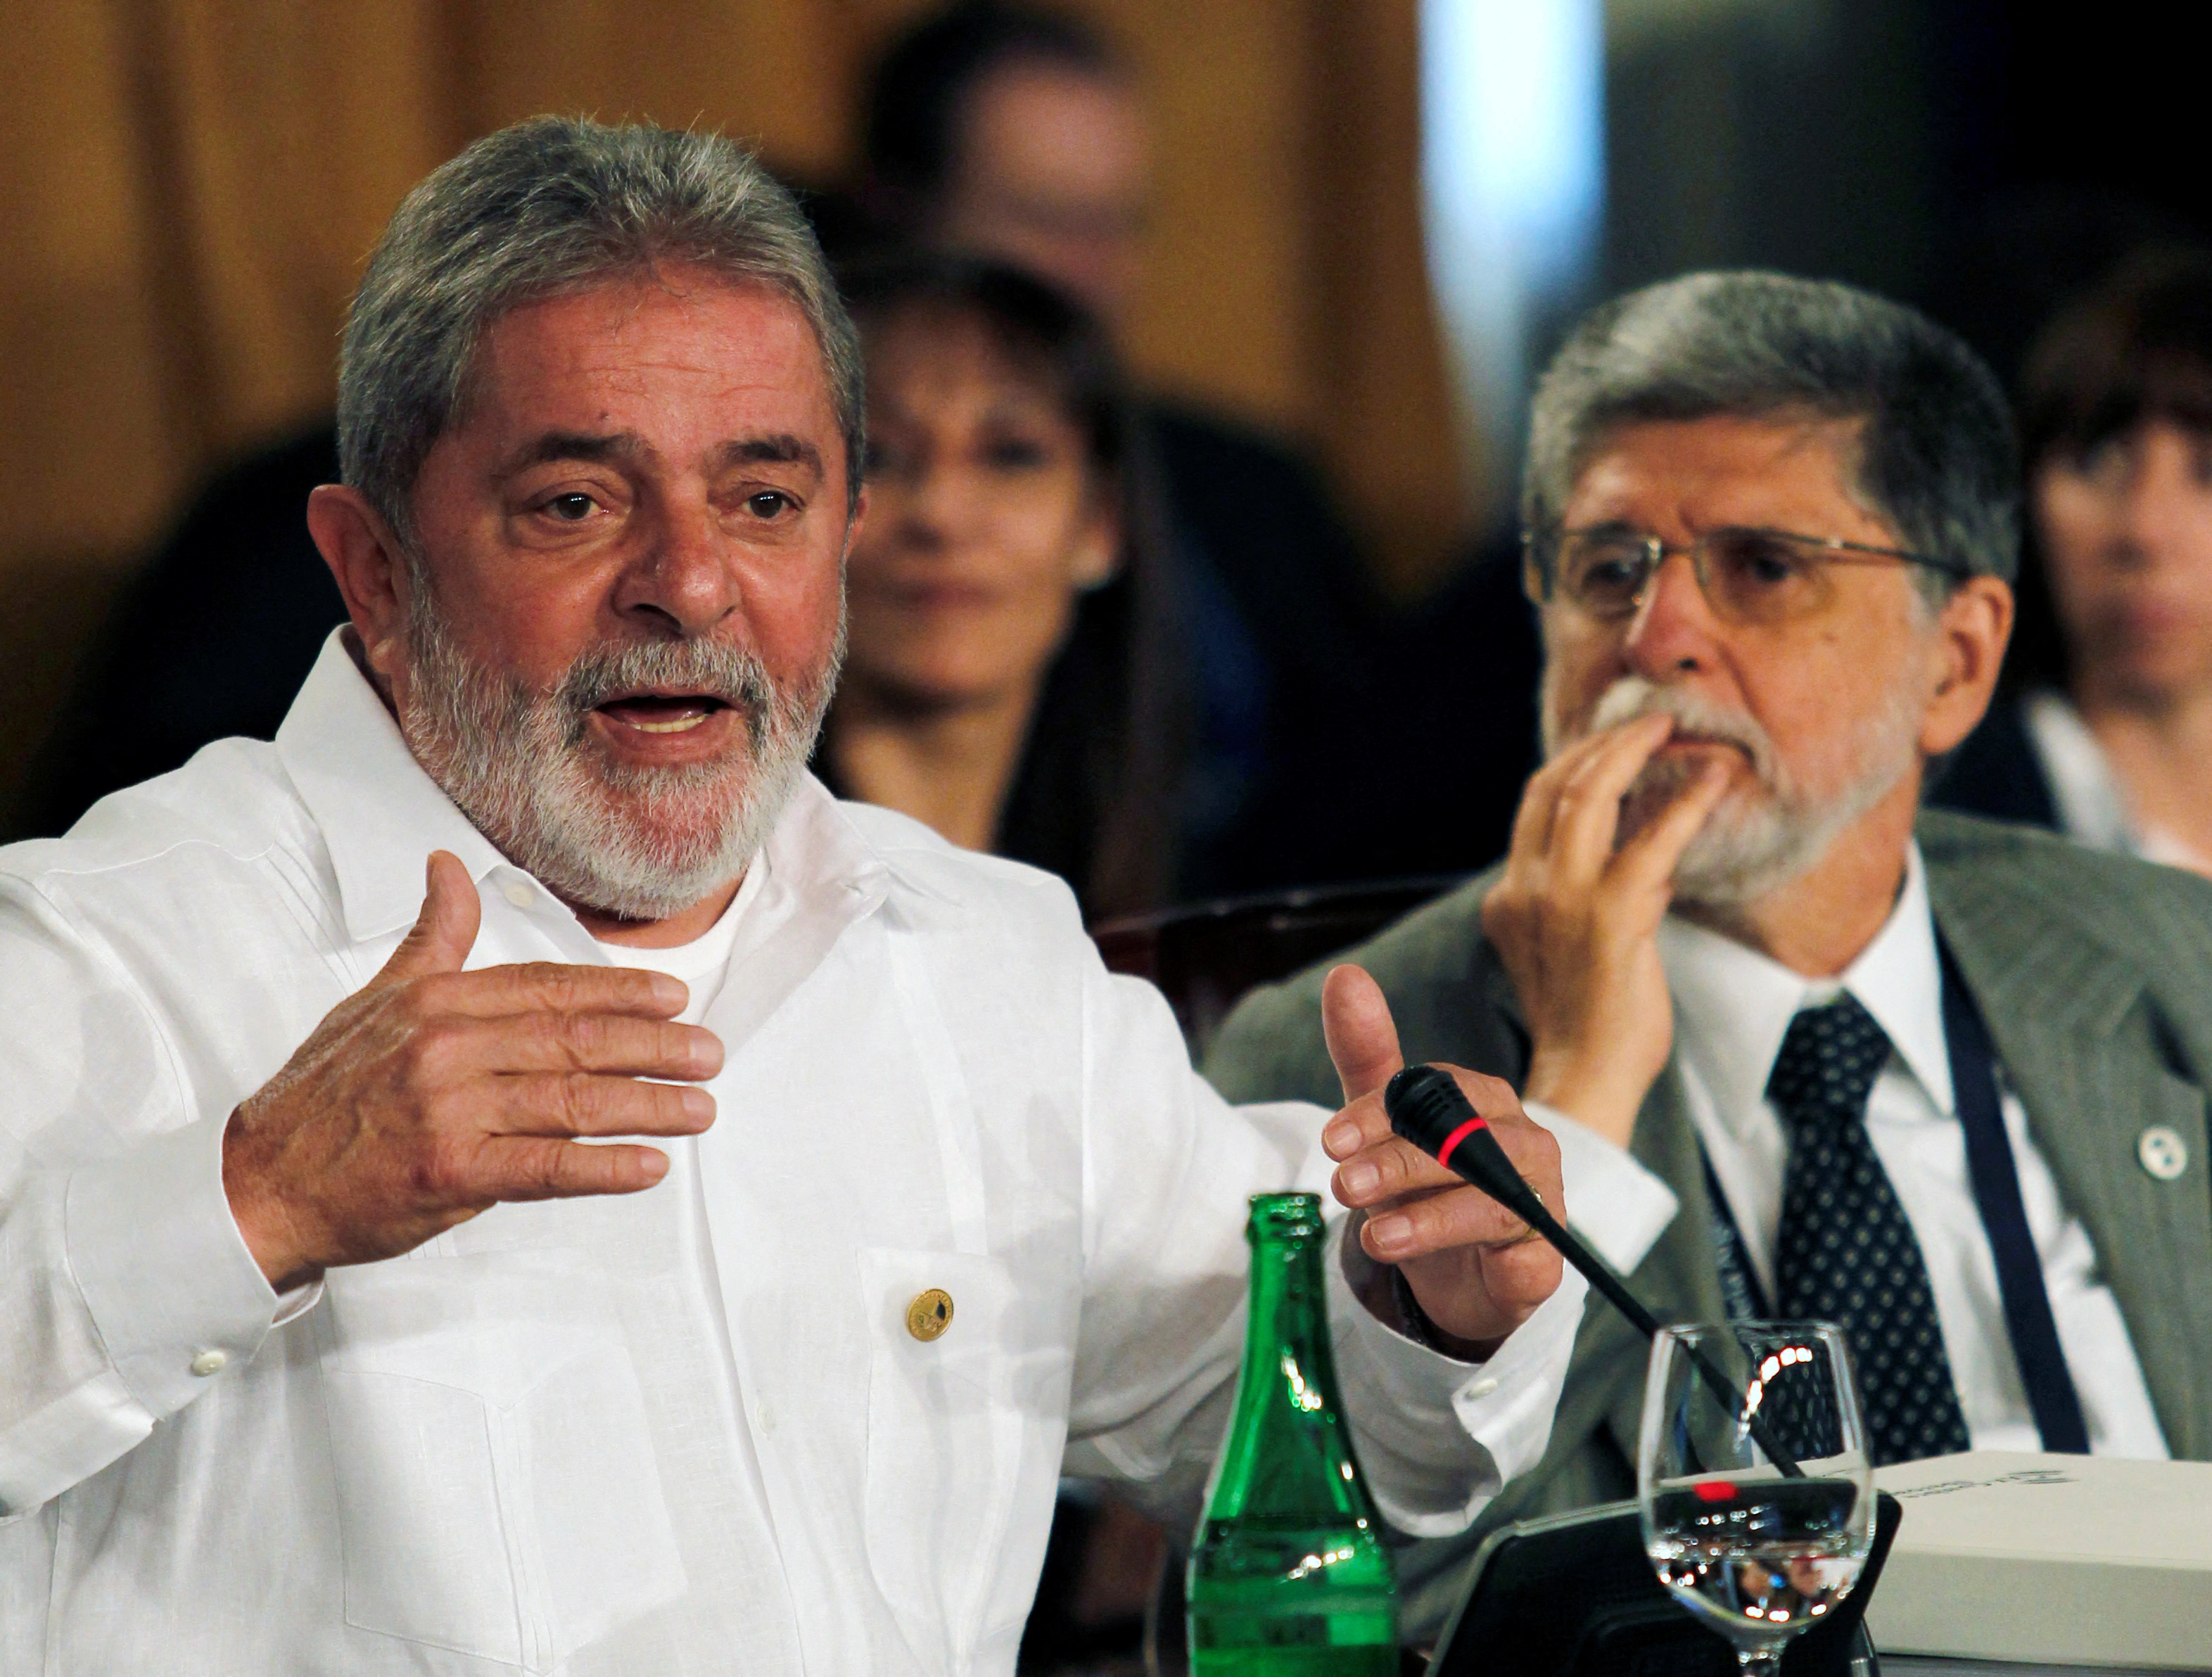 Then-Brazilian President Luiz Inacio Lula da Silva speaks next to his foreign minister, Celso Amorim, at Ibero-American Summit in Mar del Plata